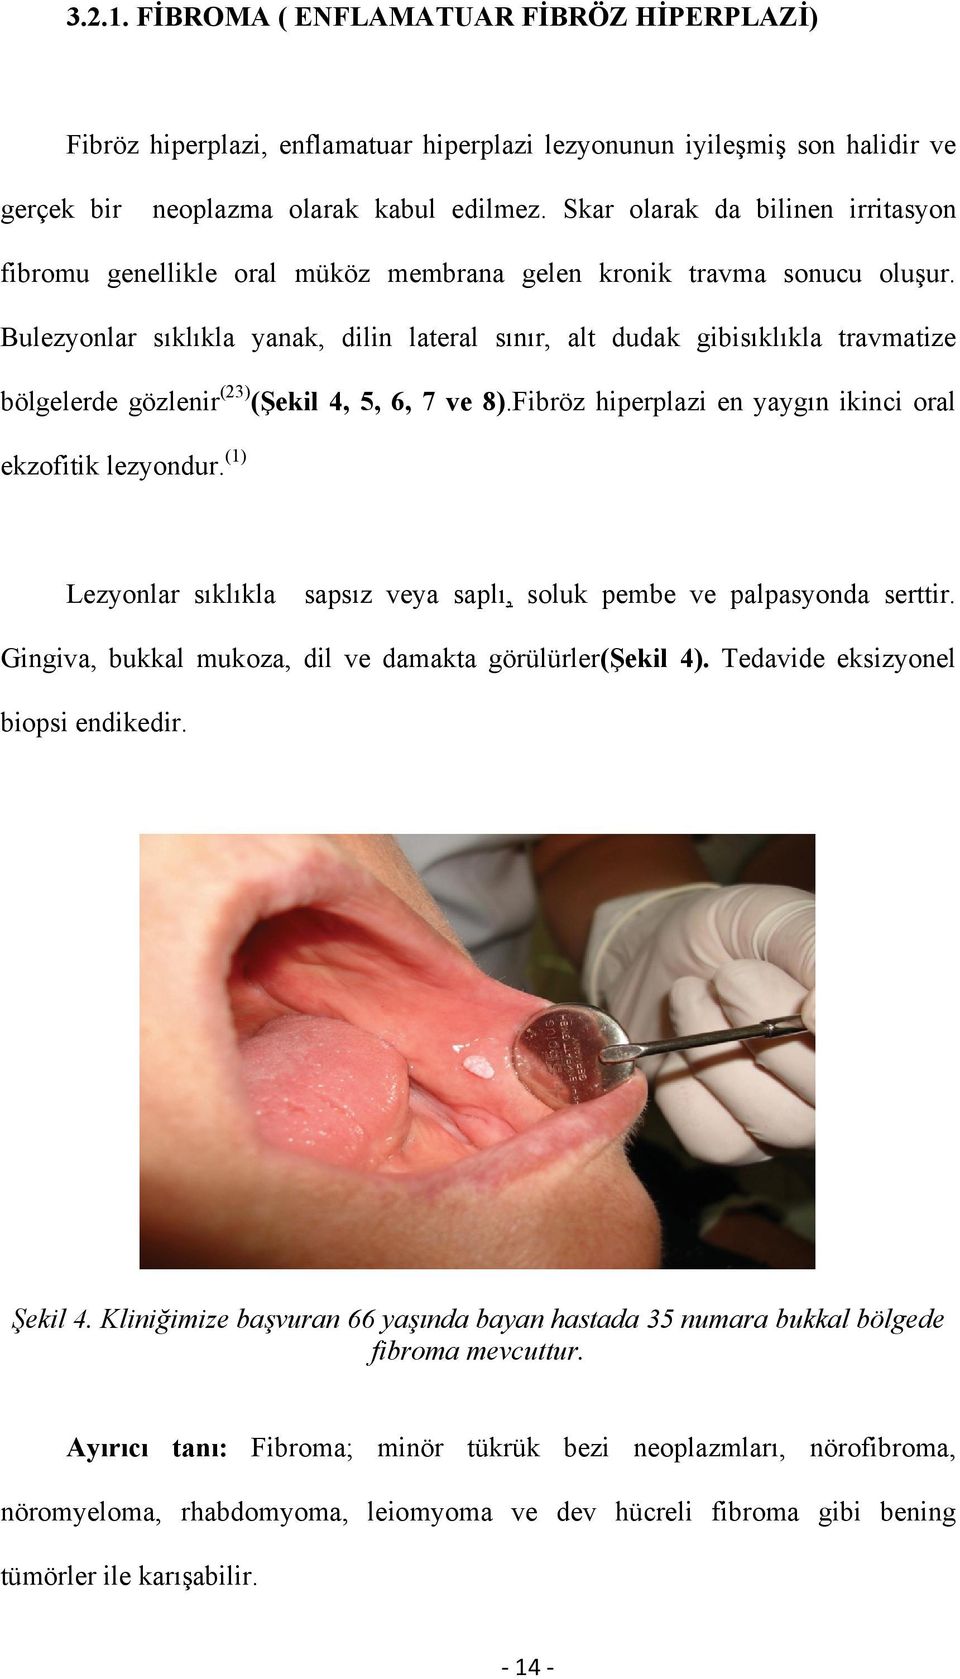 Bulezyonlar sıklıkla yanak, dilin lateral sınır, alt dudak gibisıklıkla travmatize bölgelerde gözlenir (23) (Şekil 4, 5, 6, 7 ve 8).Fibröz hiperplazi en yaygın ikinci oral ekzofitik lezyondur.